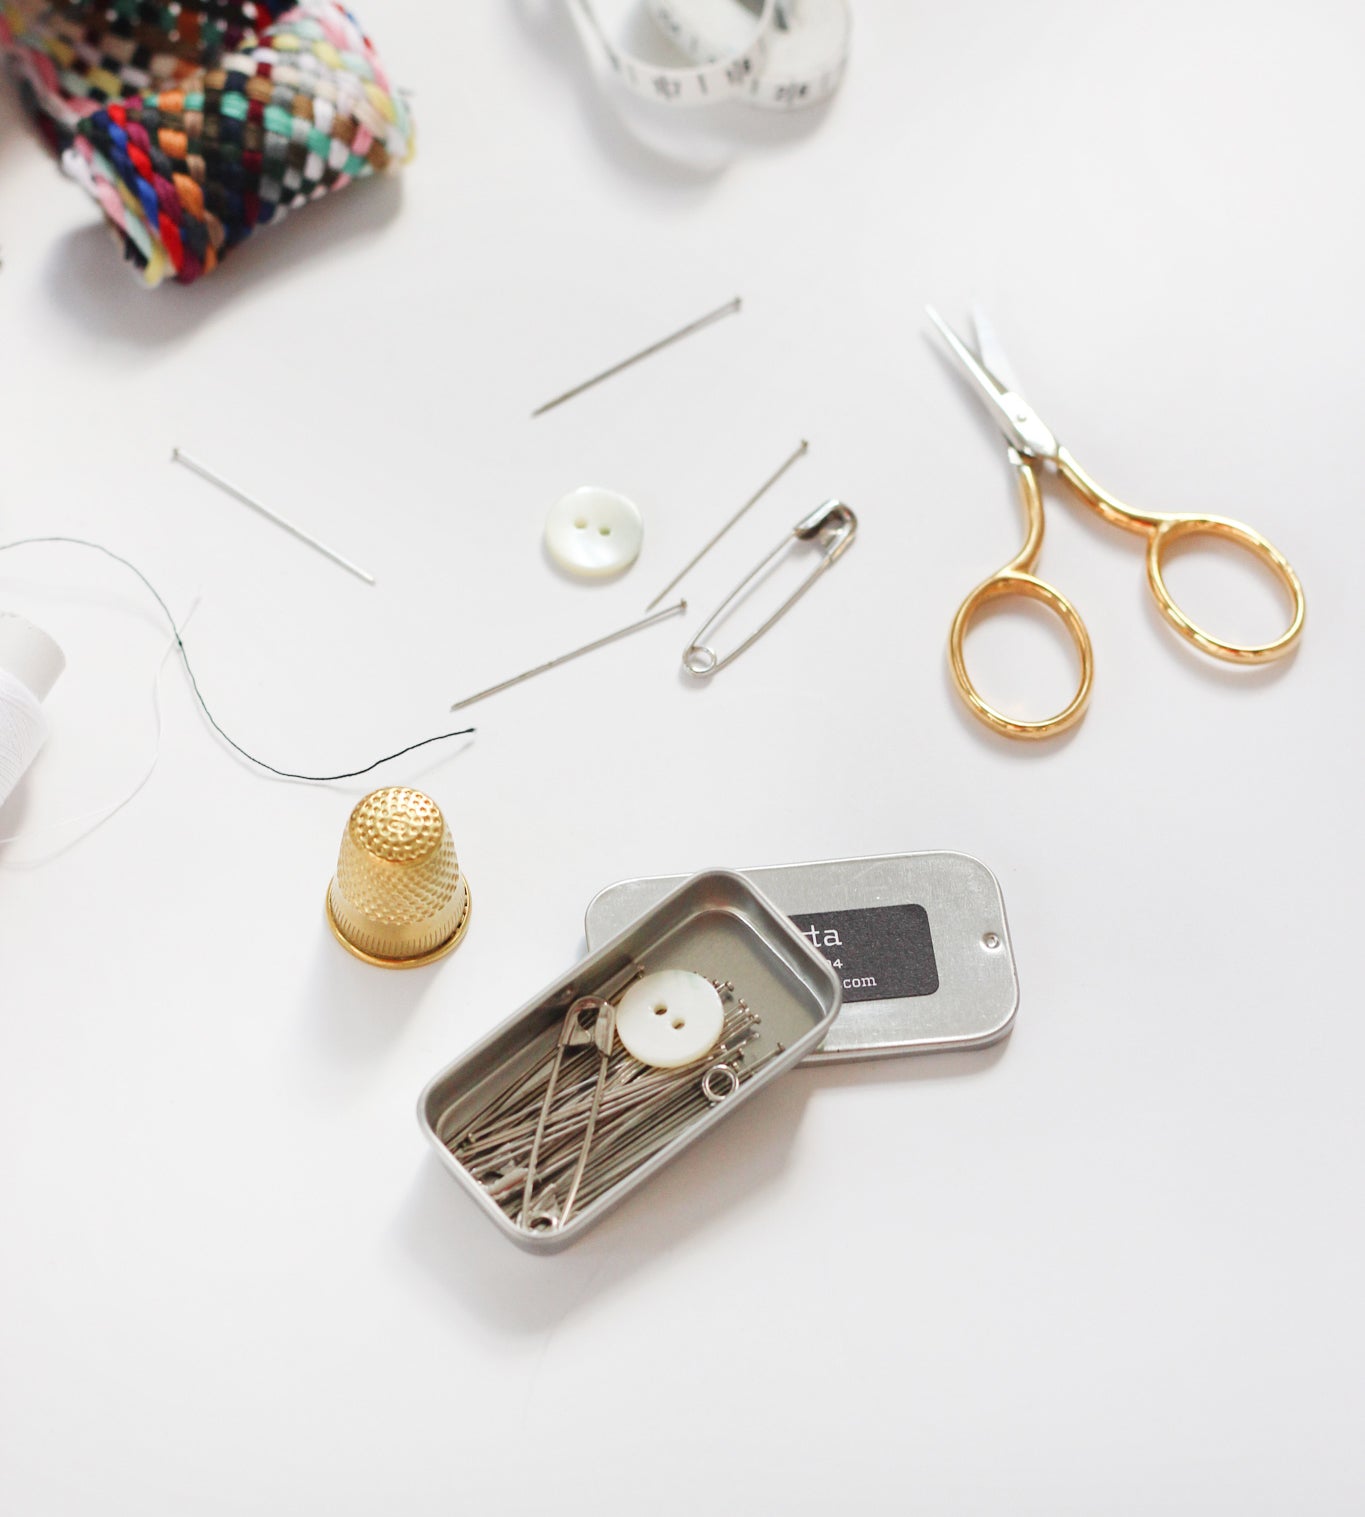 Sewing pins – studio carta shop